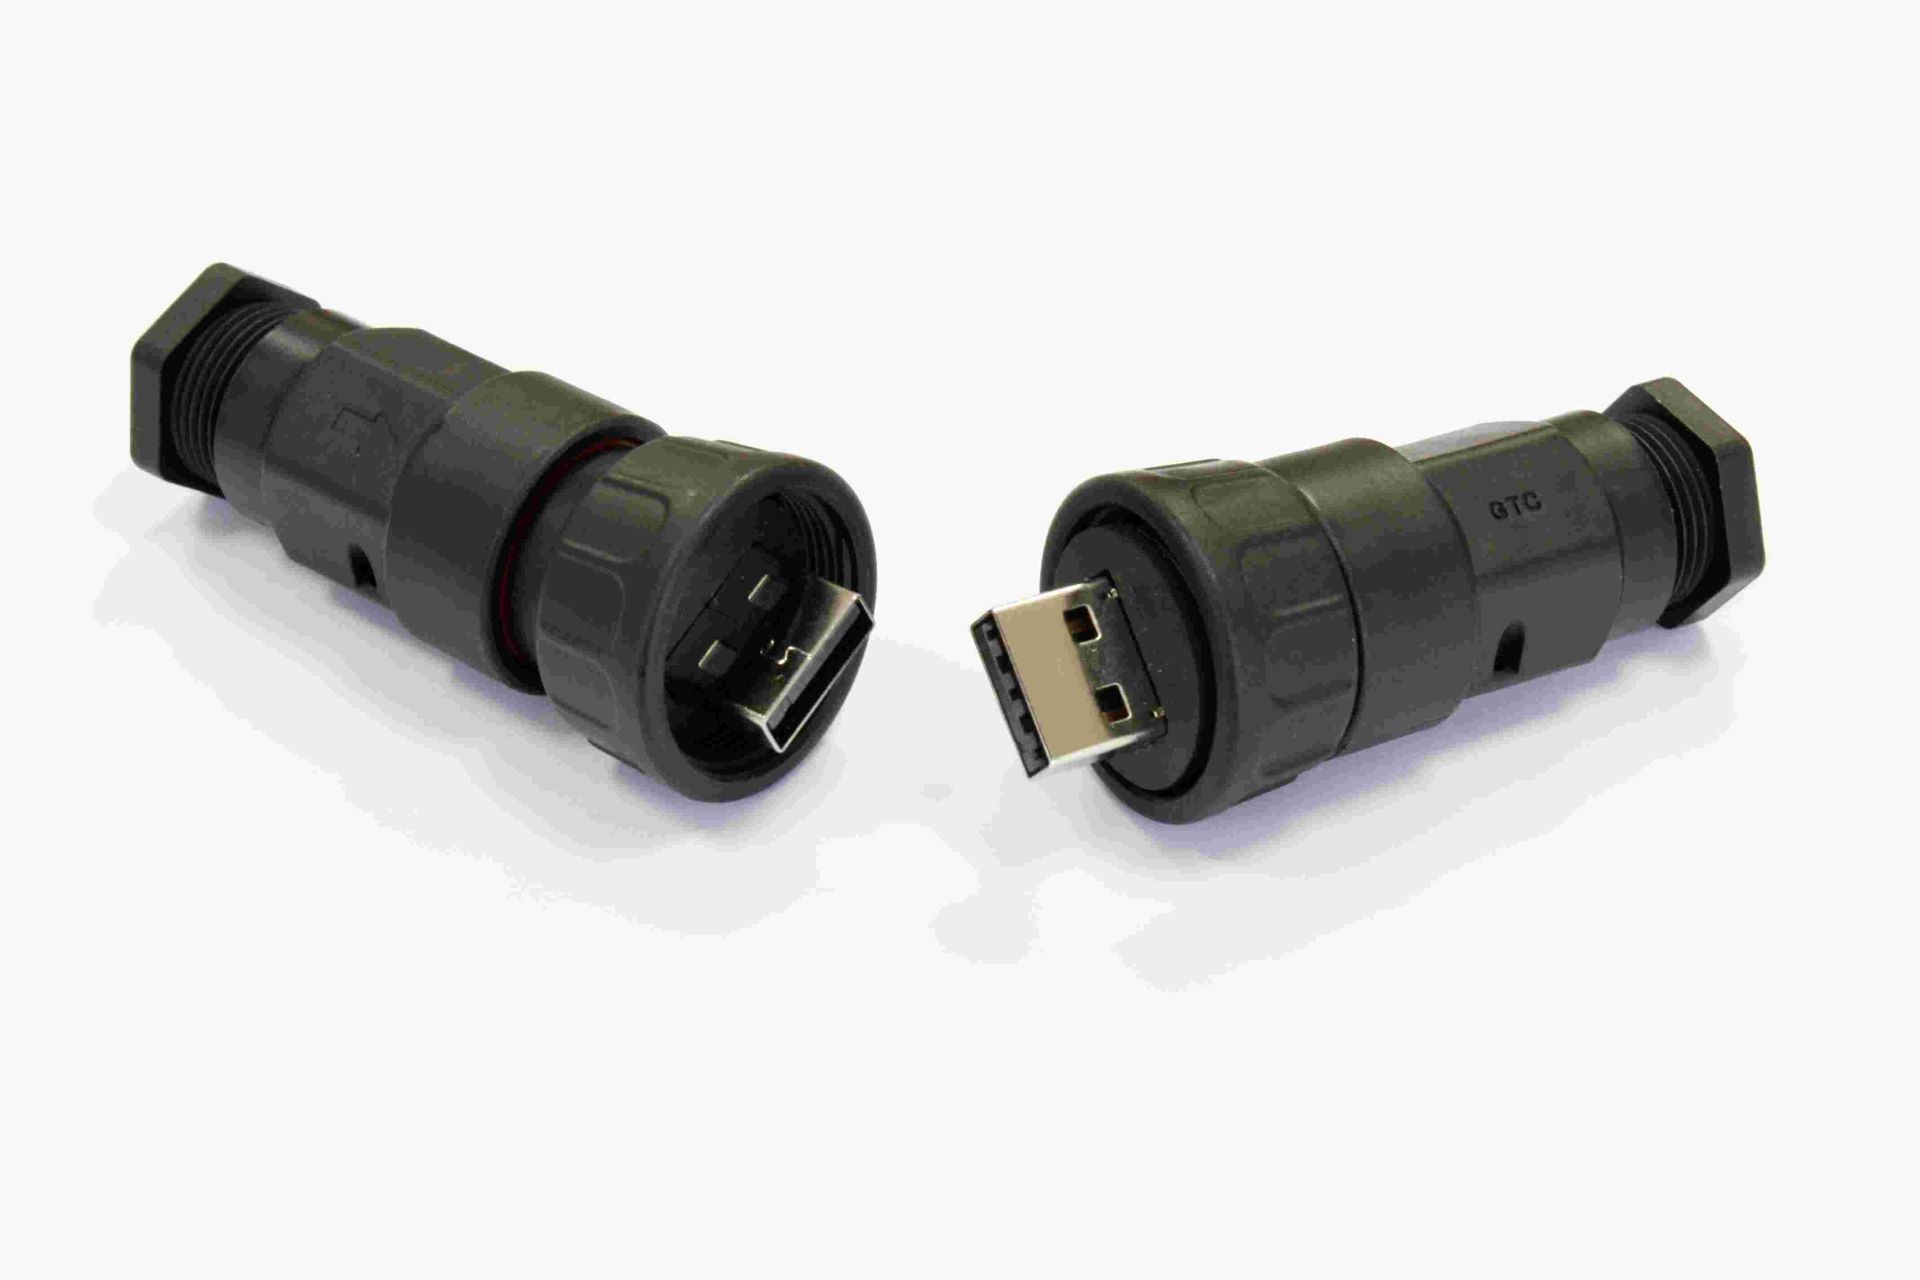 2015-11-02 GTC勗連發表新款塑膠材質防水USB 2.0 Plug組裝式連接器